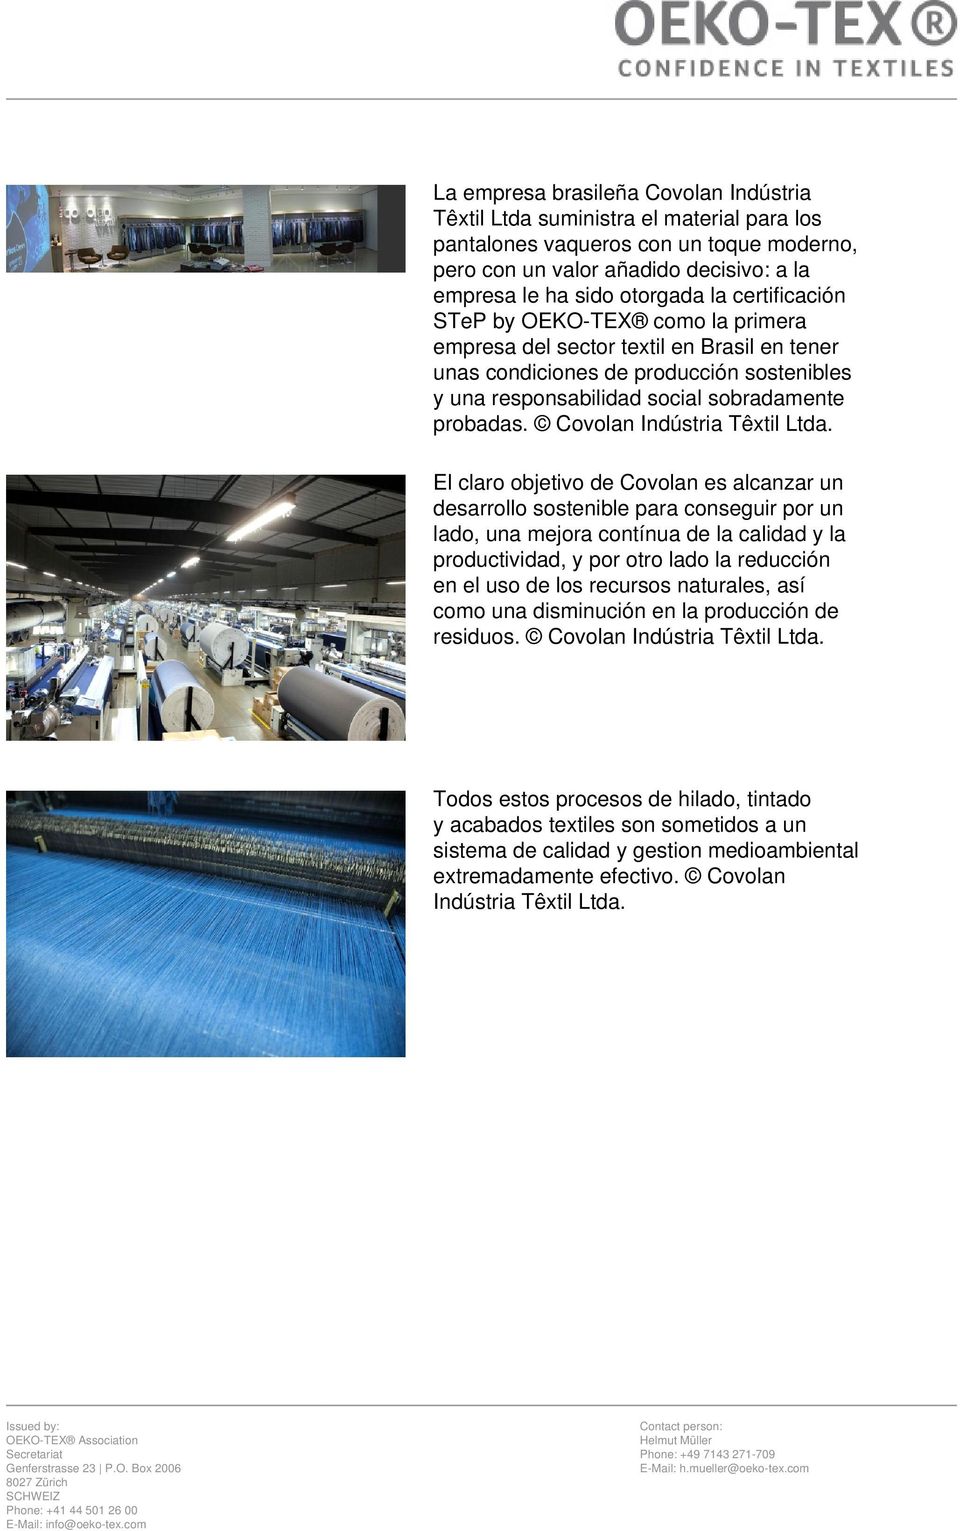 Covolan Indústria Têxtil Ltda.